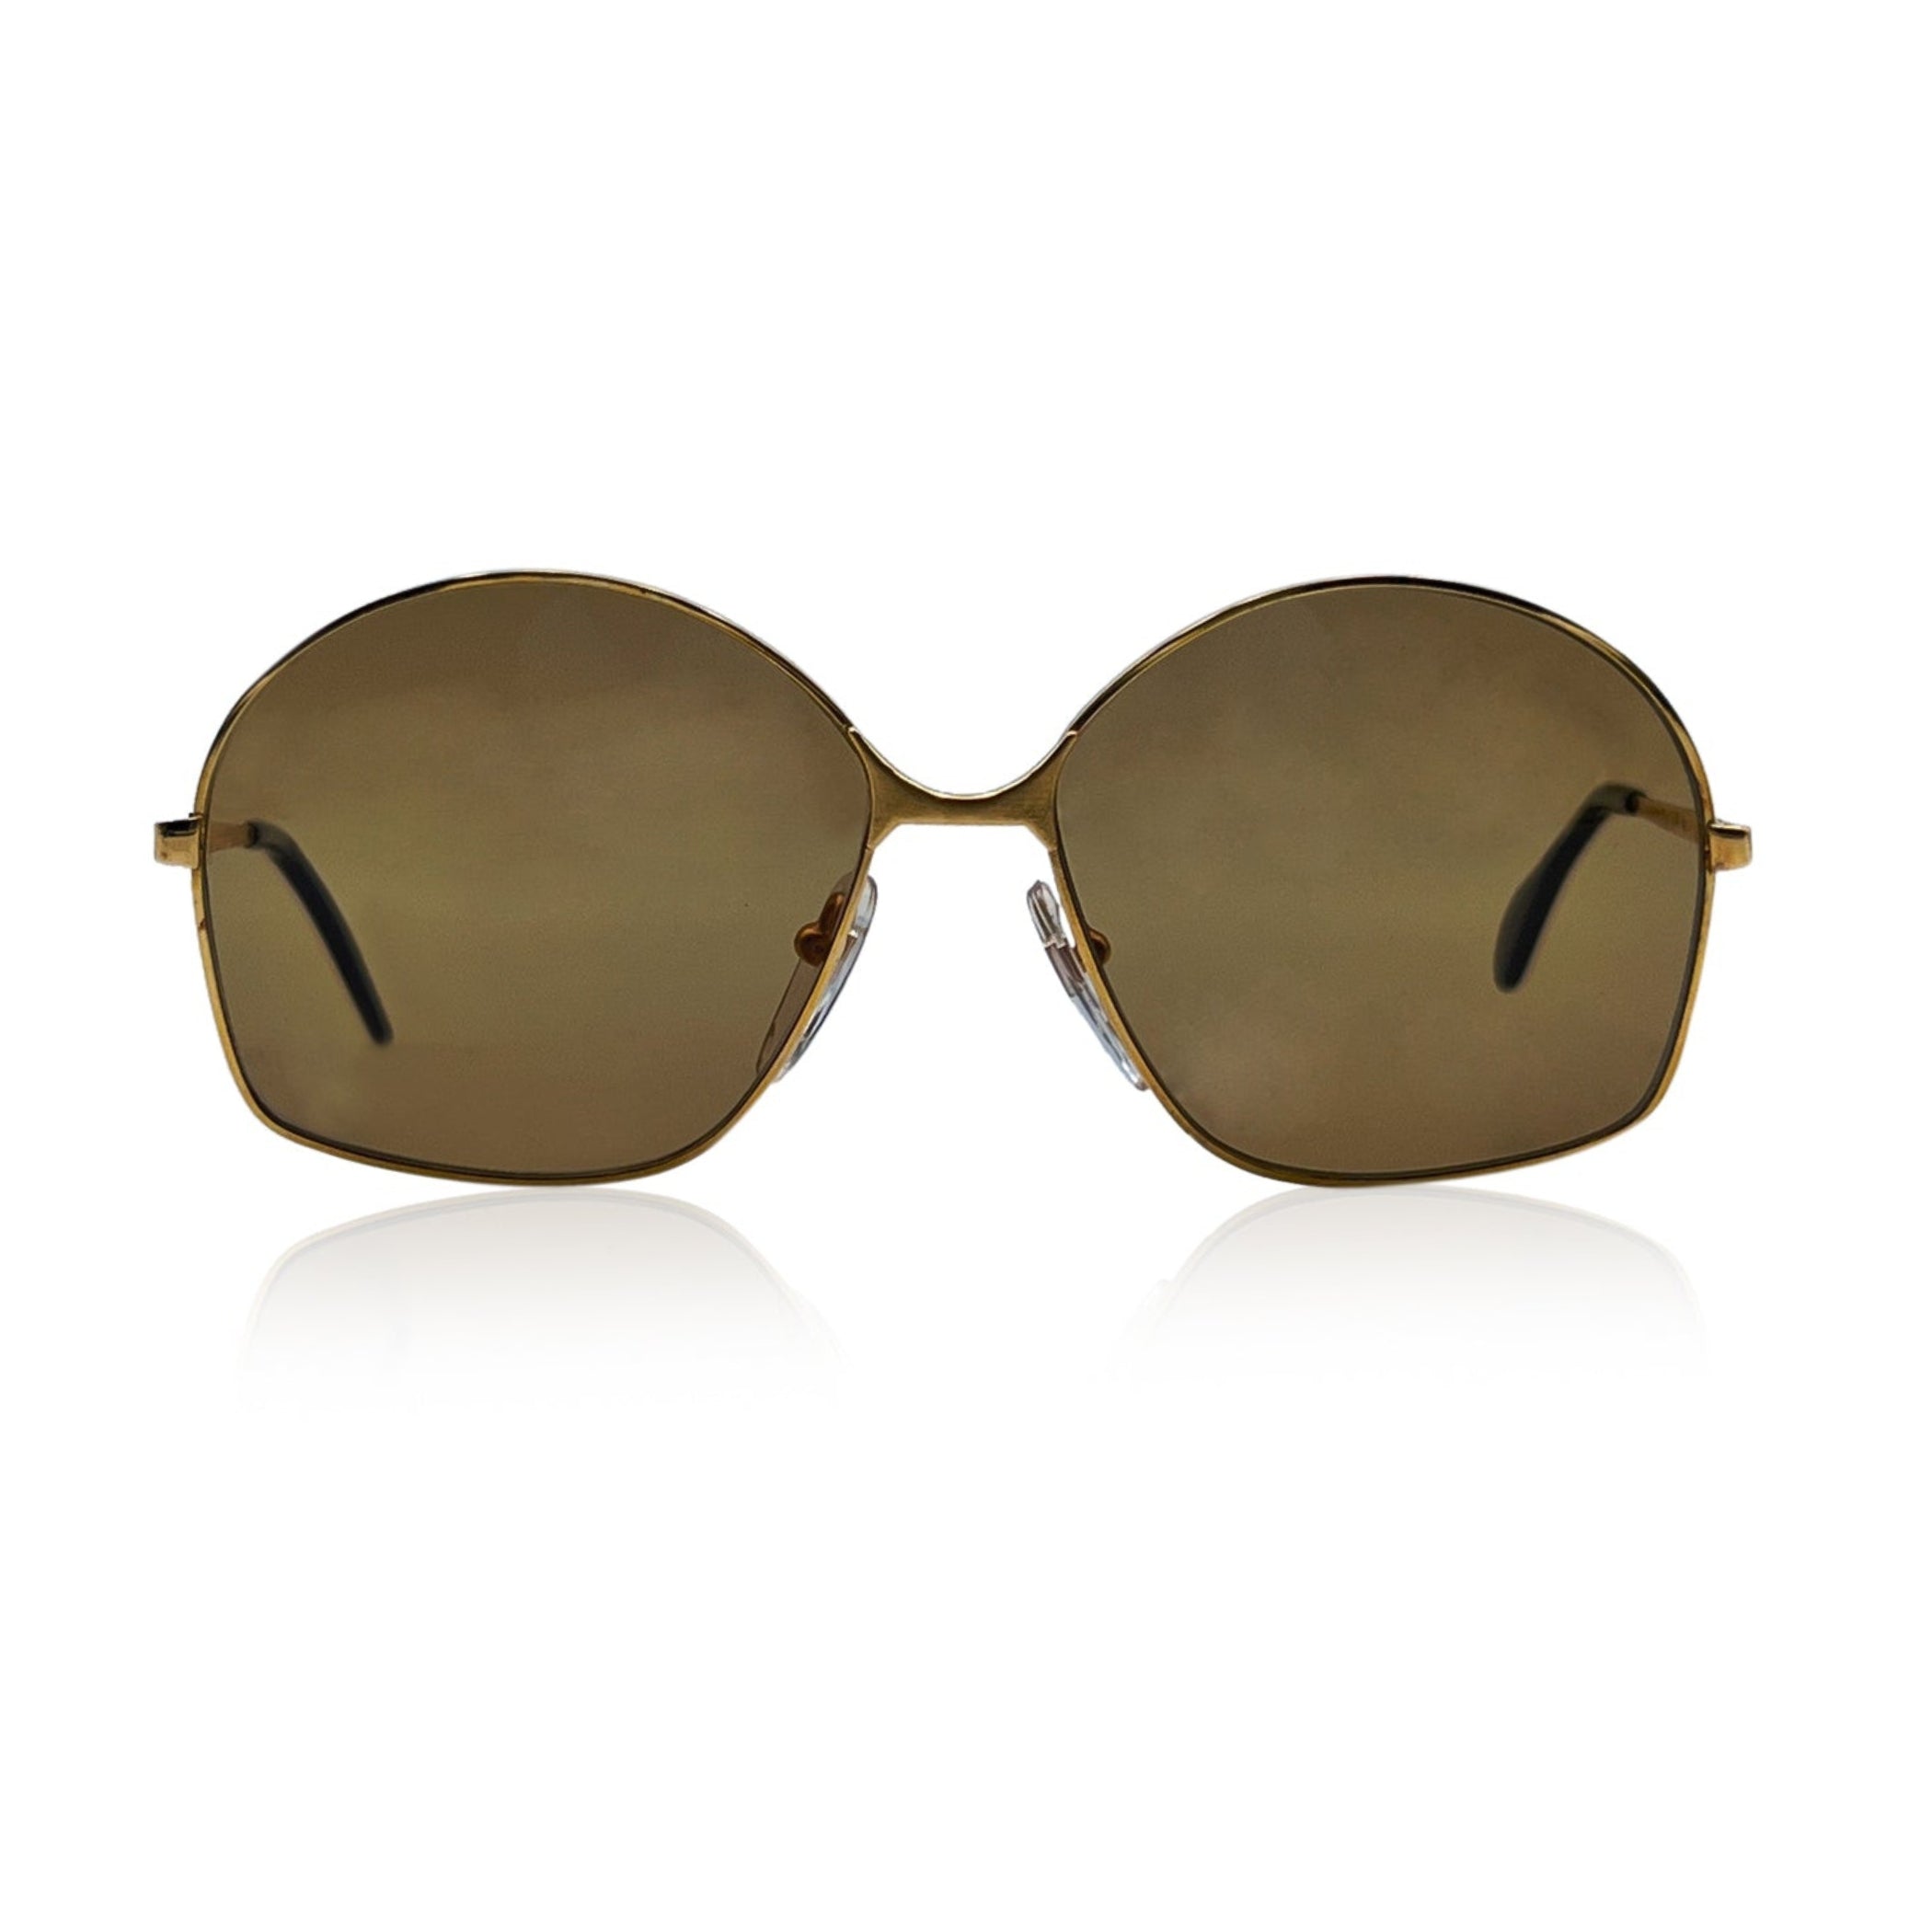 Bausch & Lomb Vintage 70s Mint Unisex Gold Sunglasses Mod. 516